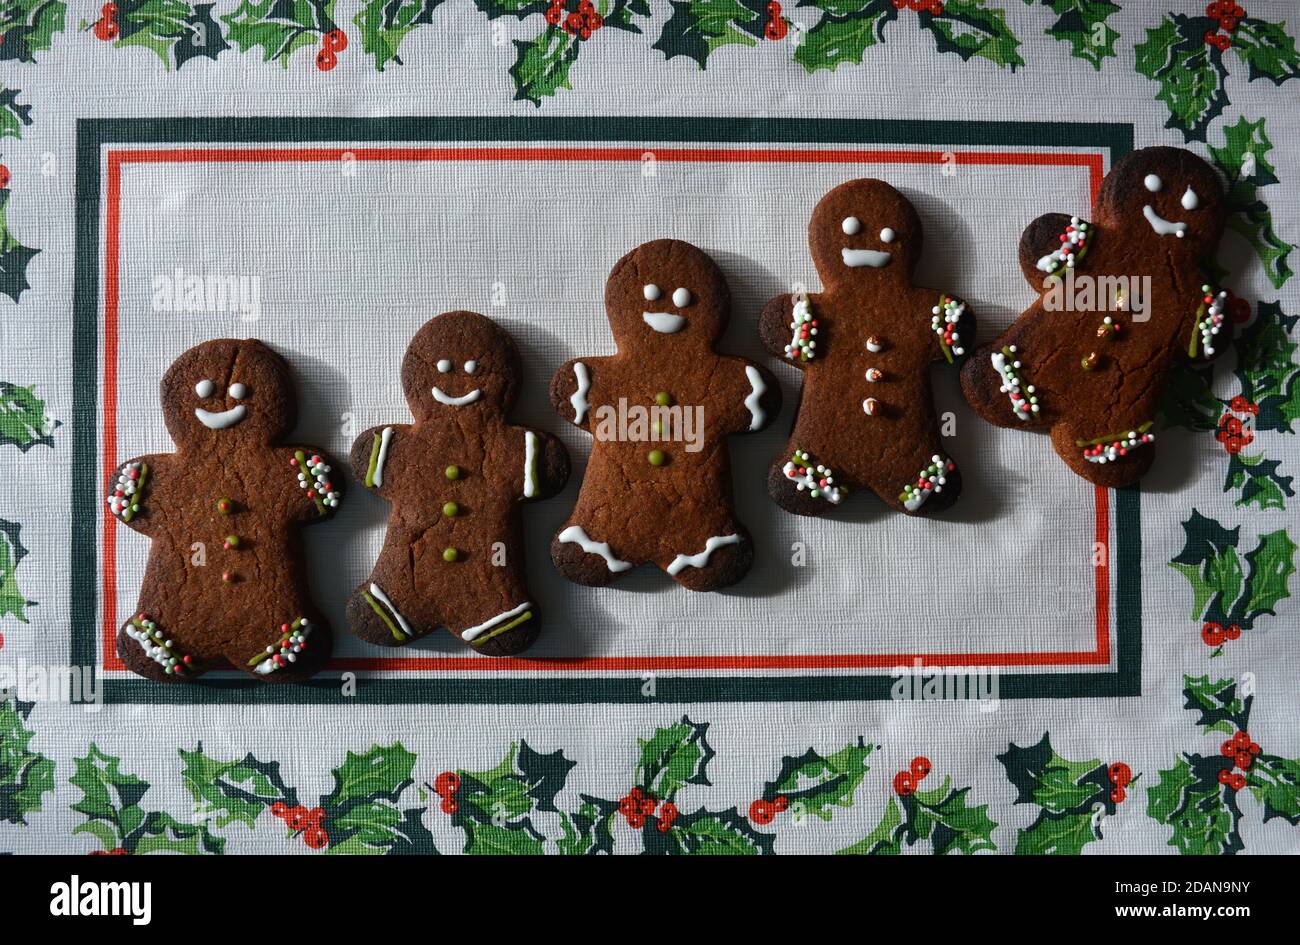 Biscotti natalizi fatti in casa con pan di zenzero, isolati su sfondo bianco con bordo a foglia di agrifoglio Foto Stock